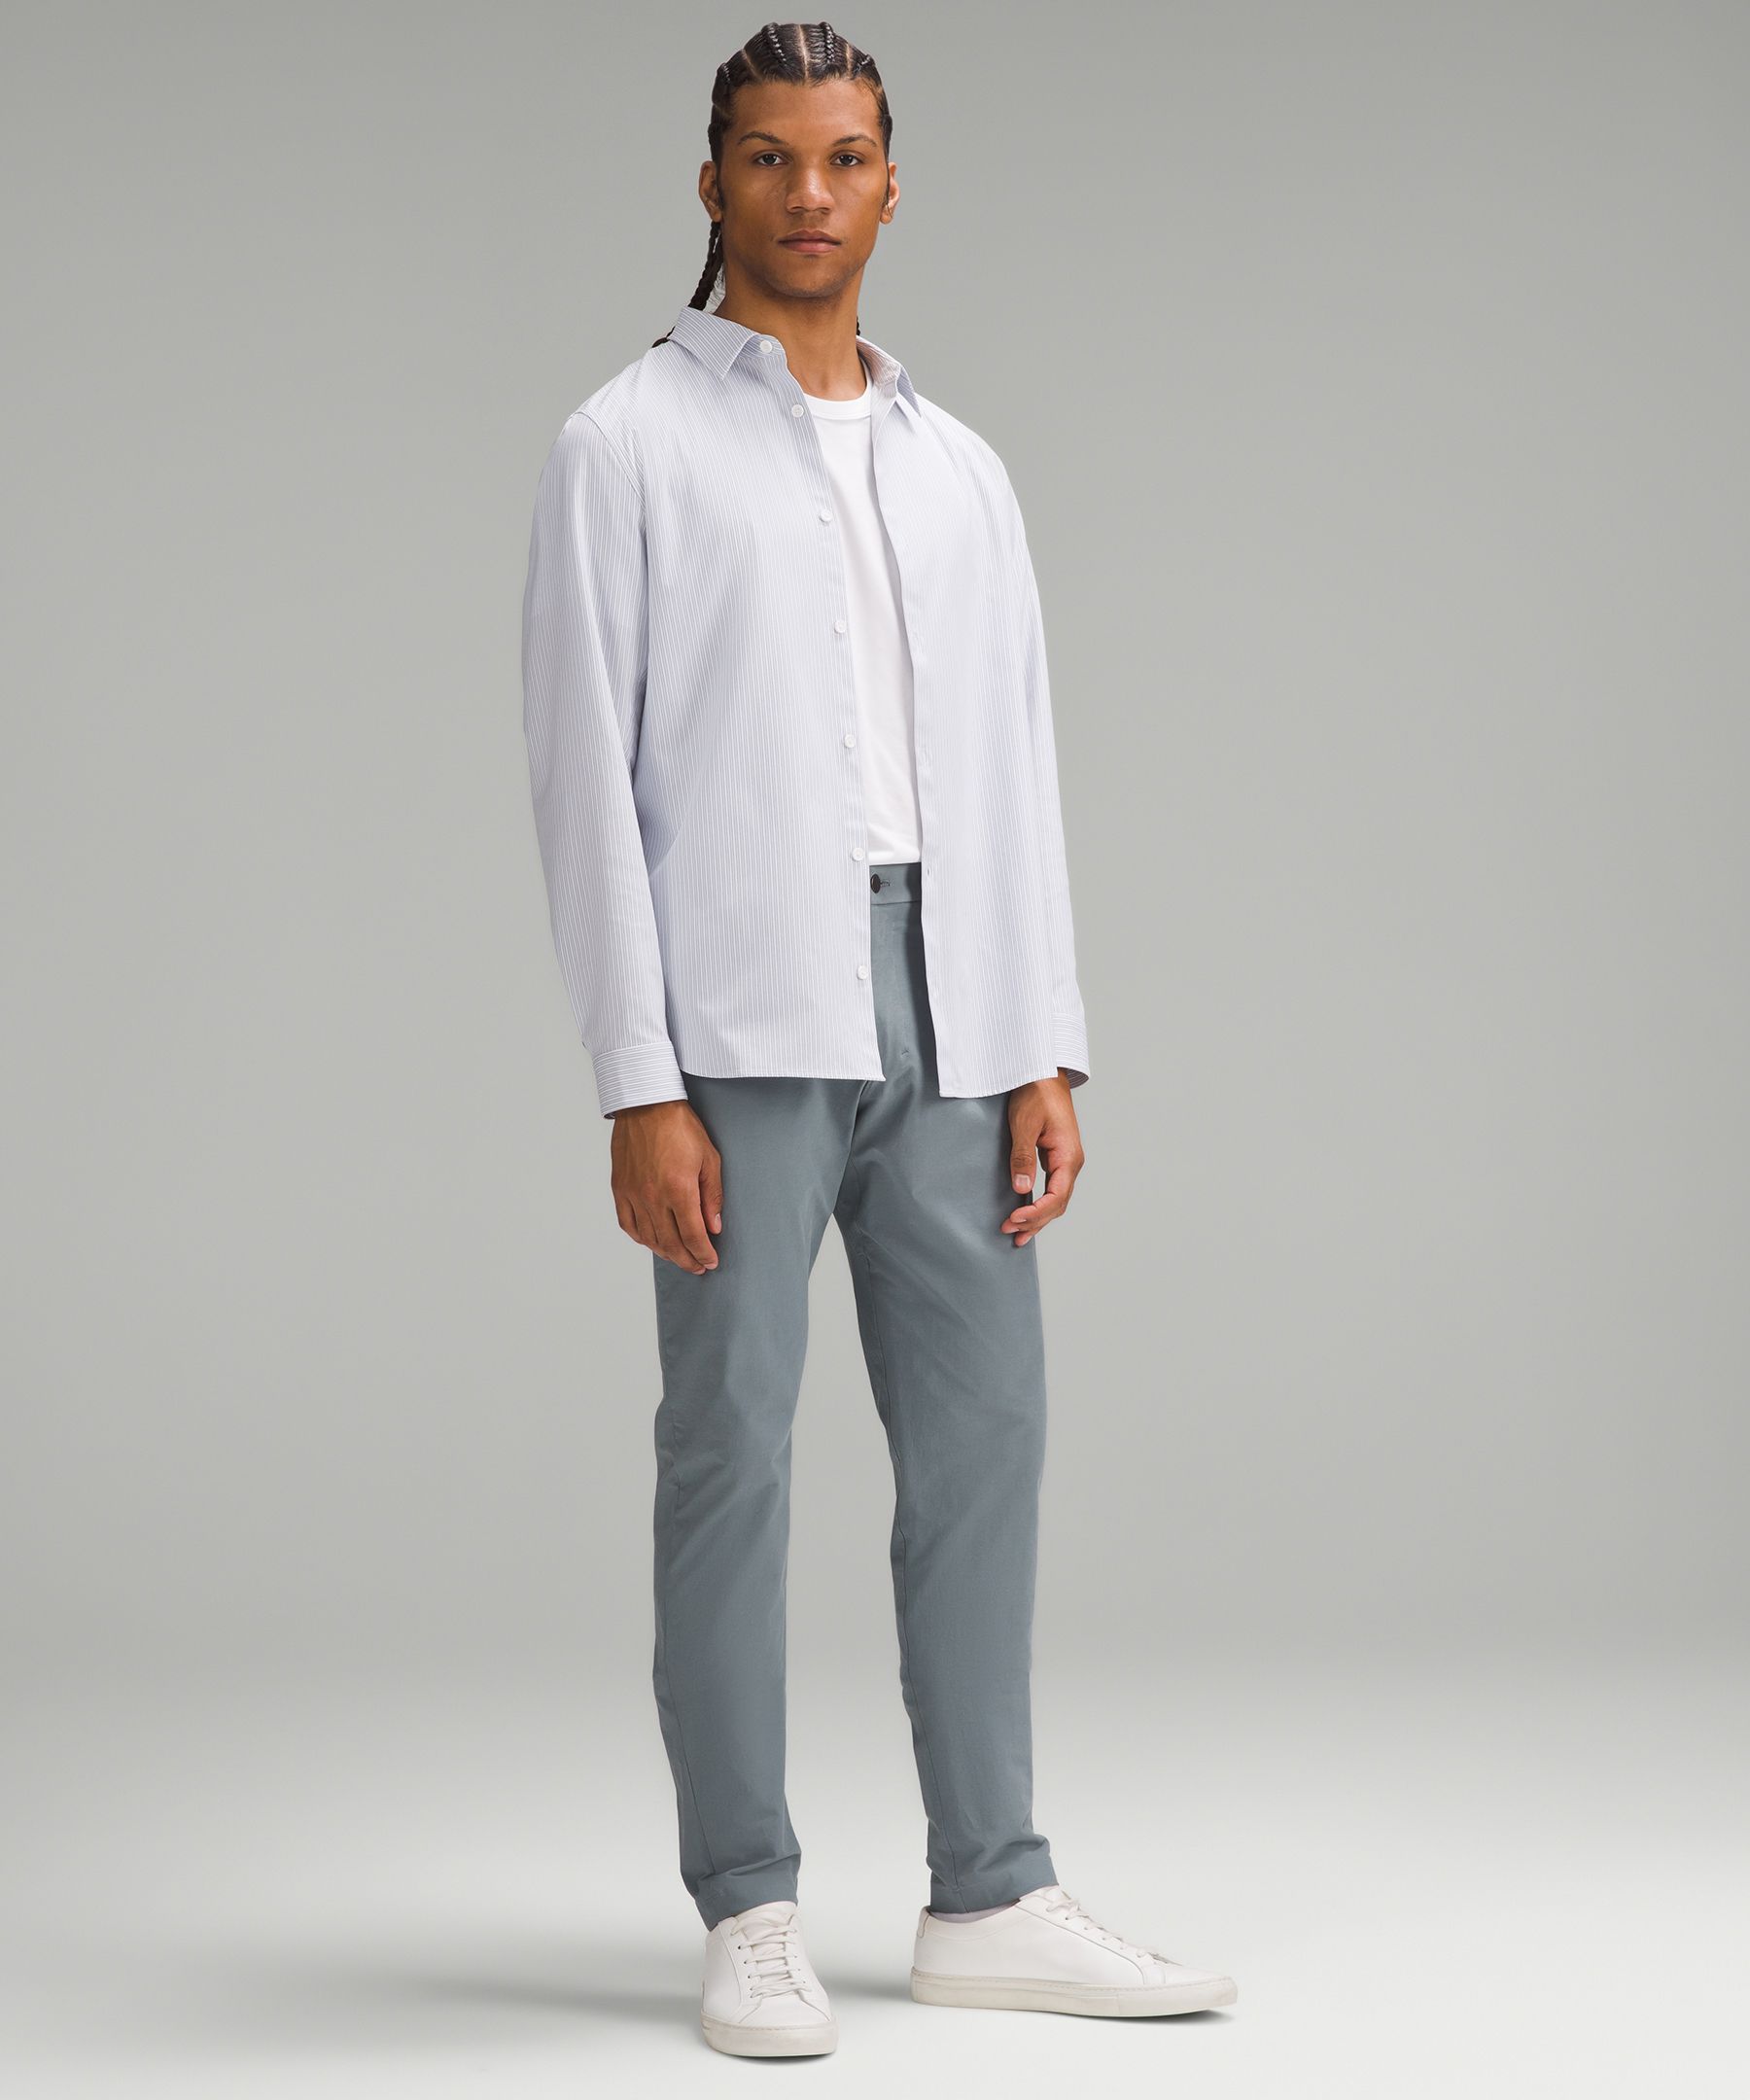 ABC Slim-Fit Trouser 30"L *Stretch Cotton VersaTwill | Men's Trousers